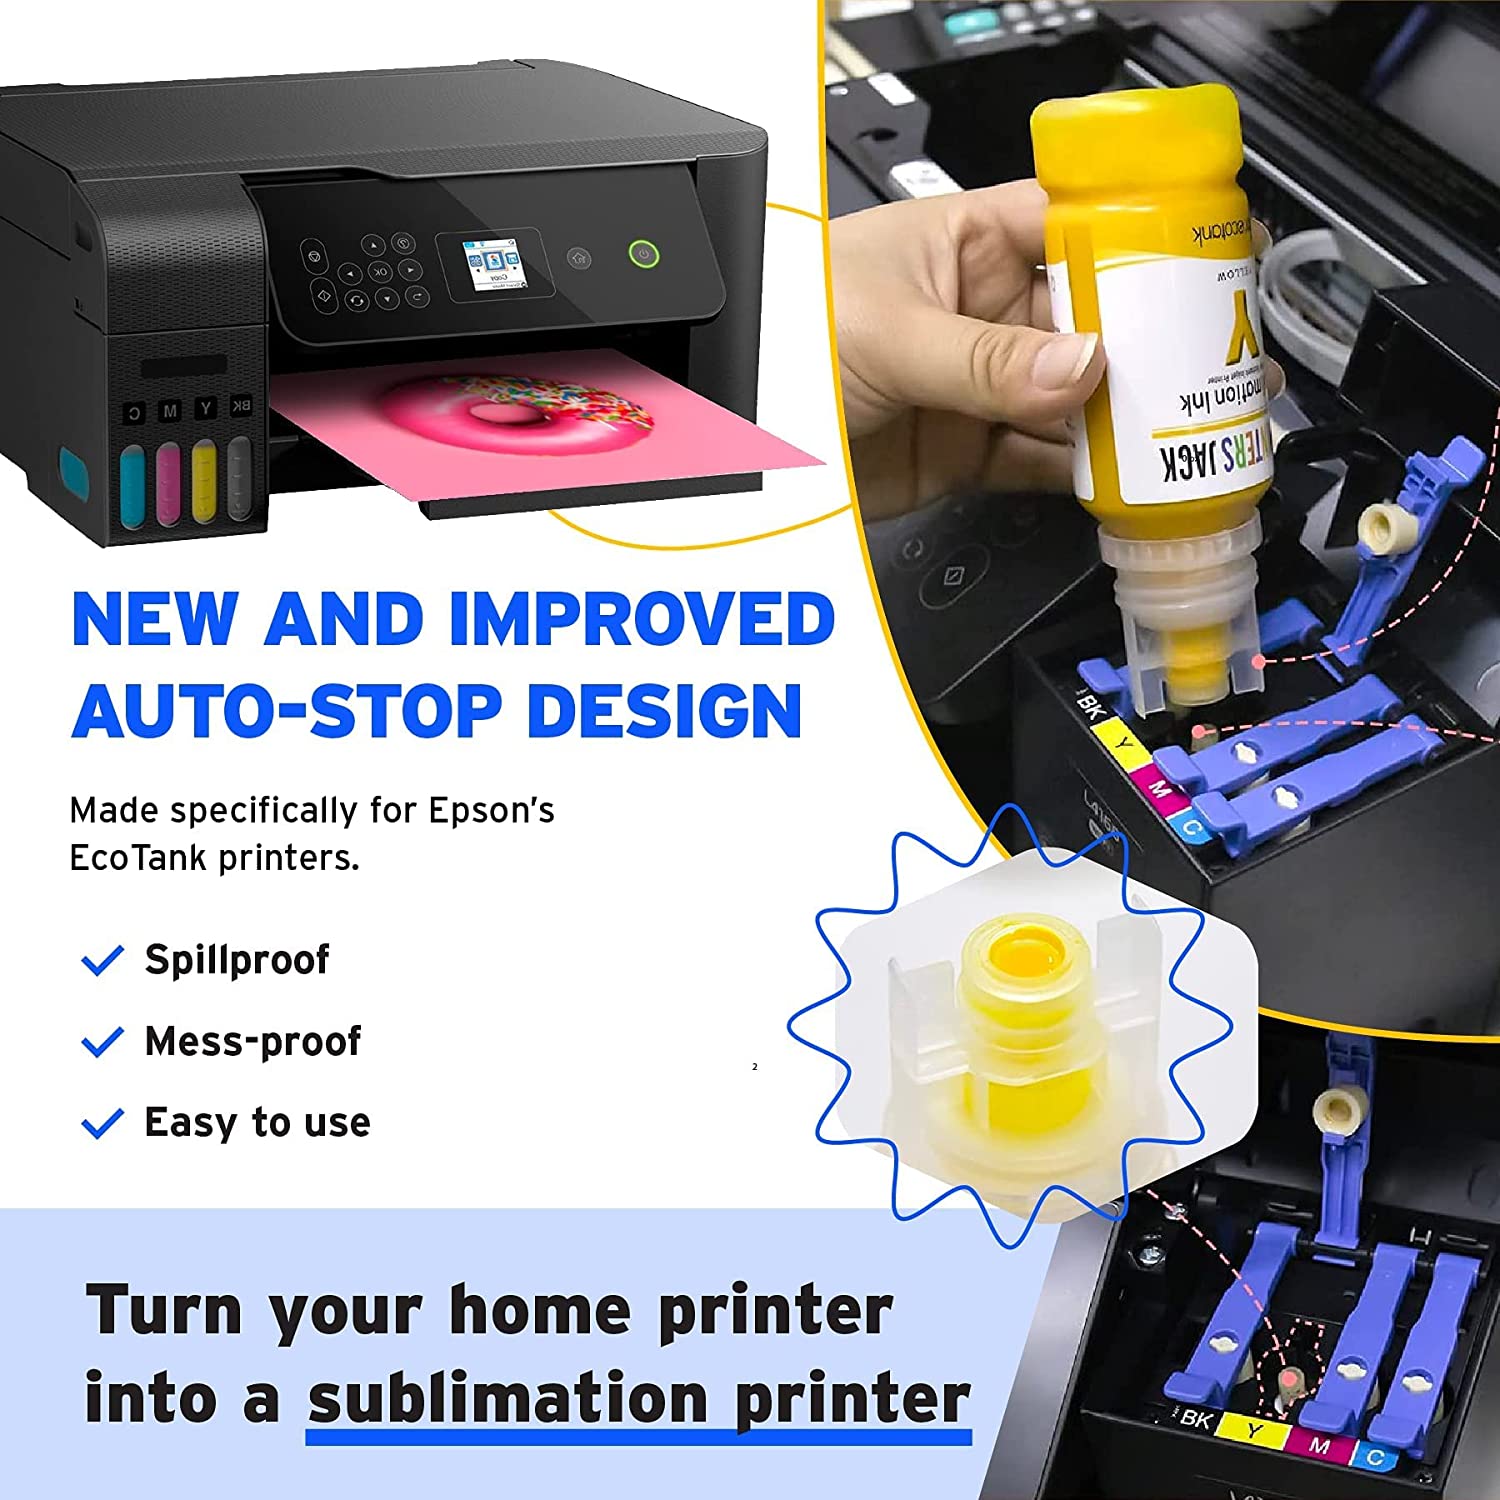  seogol Sublimation Ink for Printers ET-2720 ET-2760 ET-2750  ET-15000 ET-4700 ET-3760 WF-7710 WF-7720 WF-7210 C88+ ETC. 400ml : Office  Products